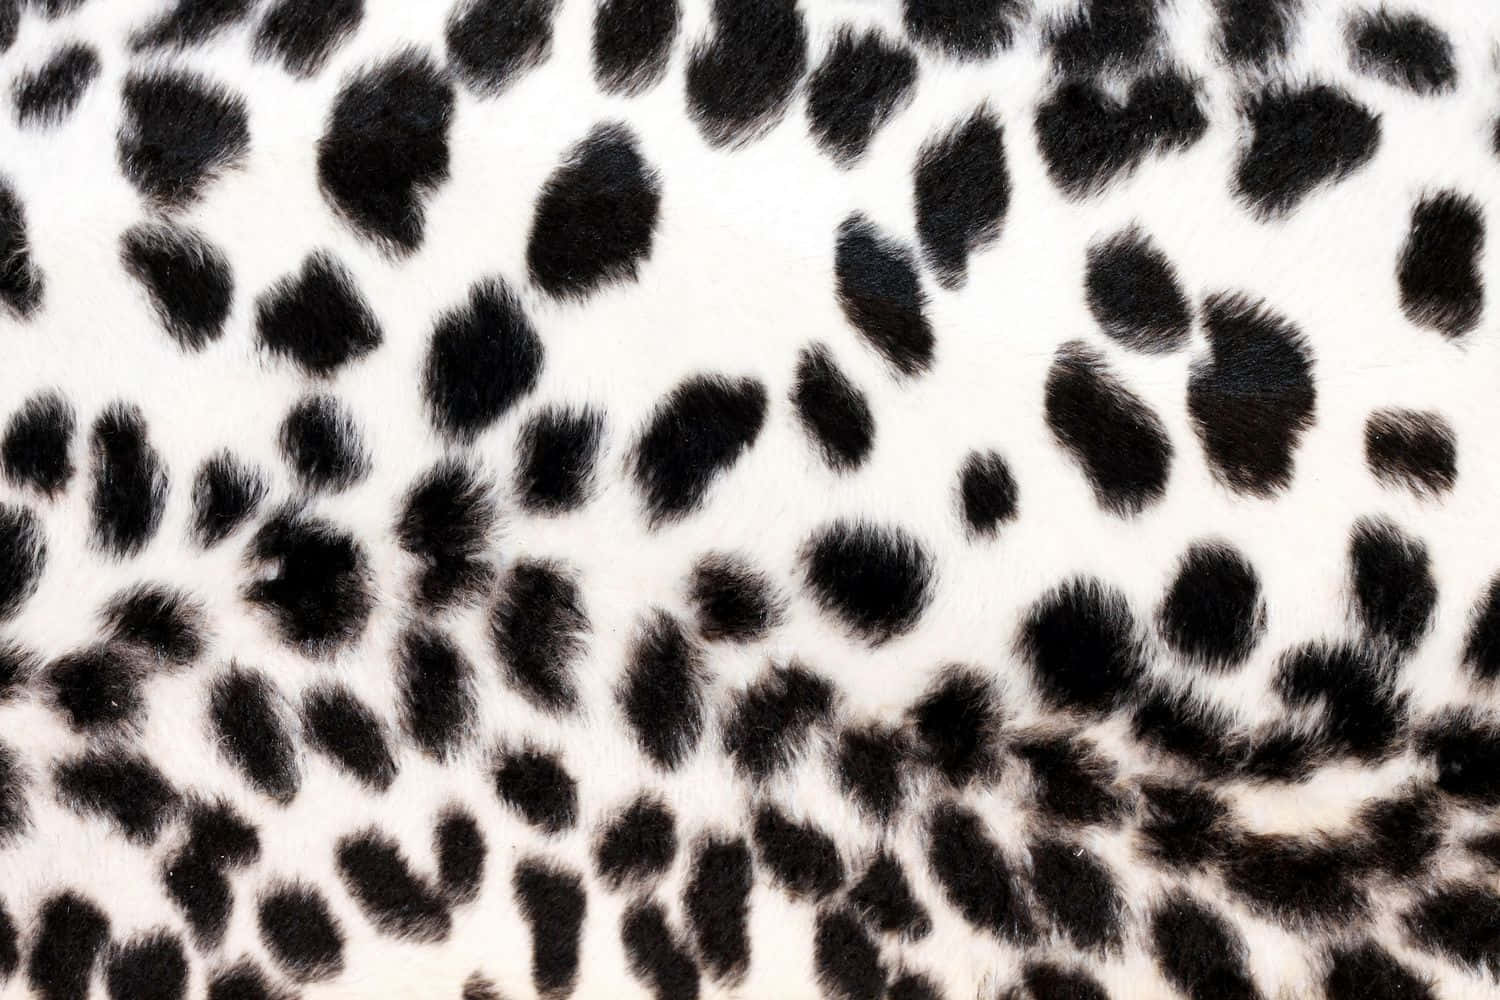 Unaferoce Combinazione Di Nero E Bianco Con Un Tocco Di Stampa Leopardo. Sfondo